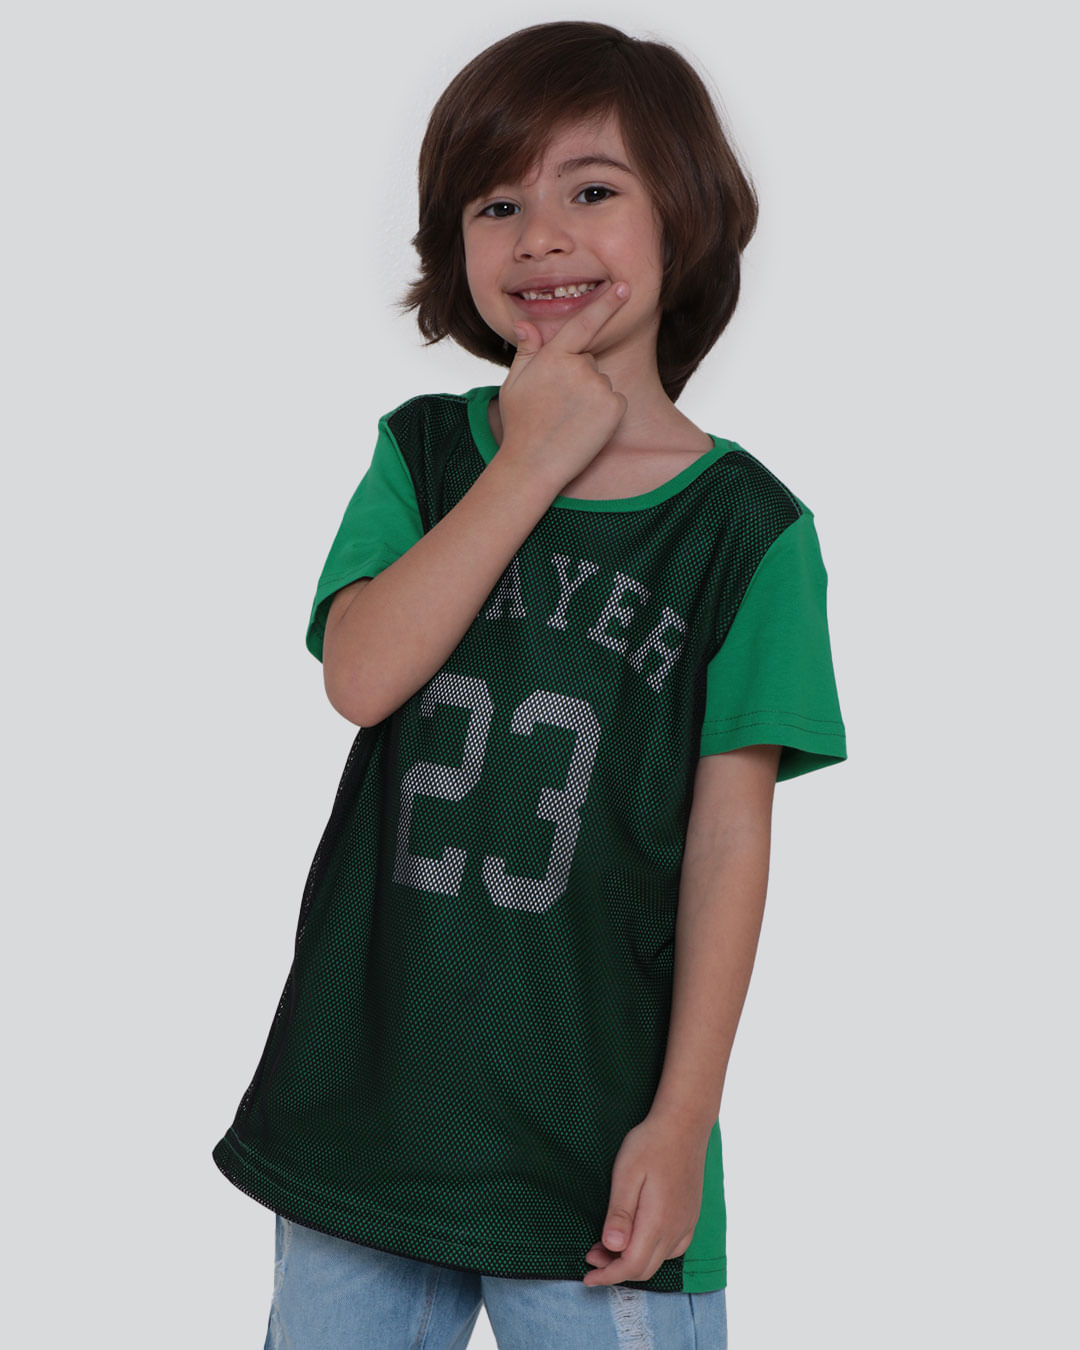 Camiseta Infantil Player 23 Verde